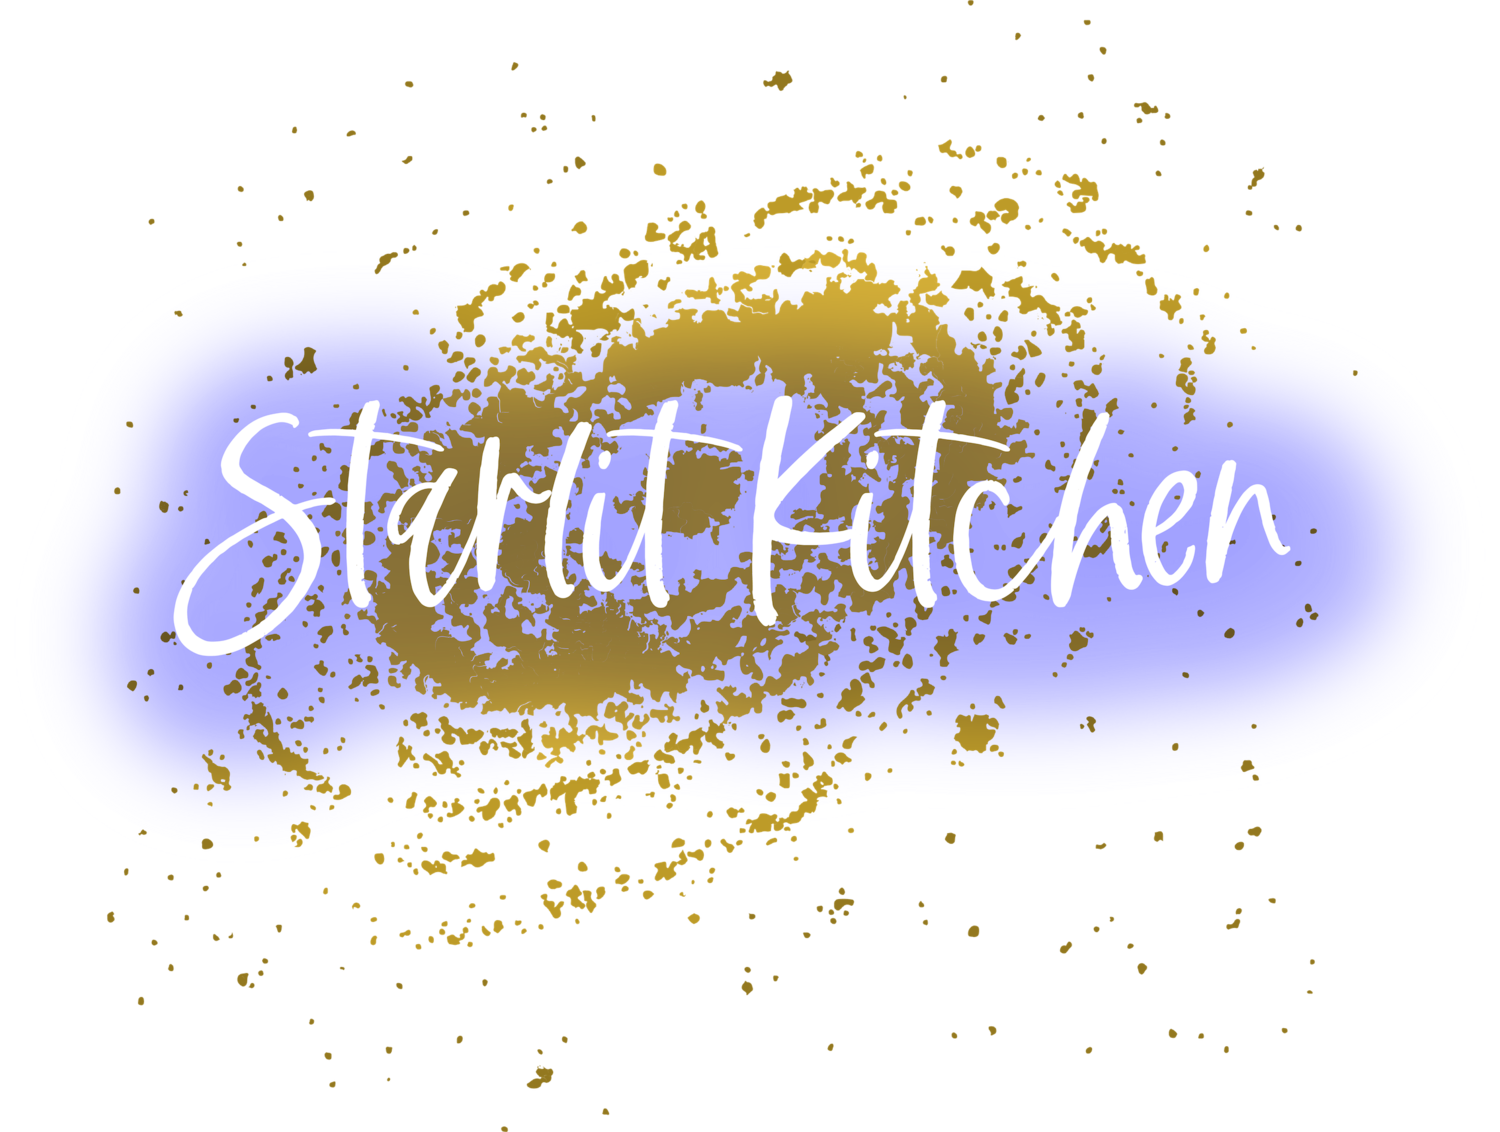 Starlit Kitchen